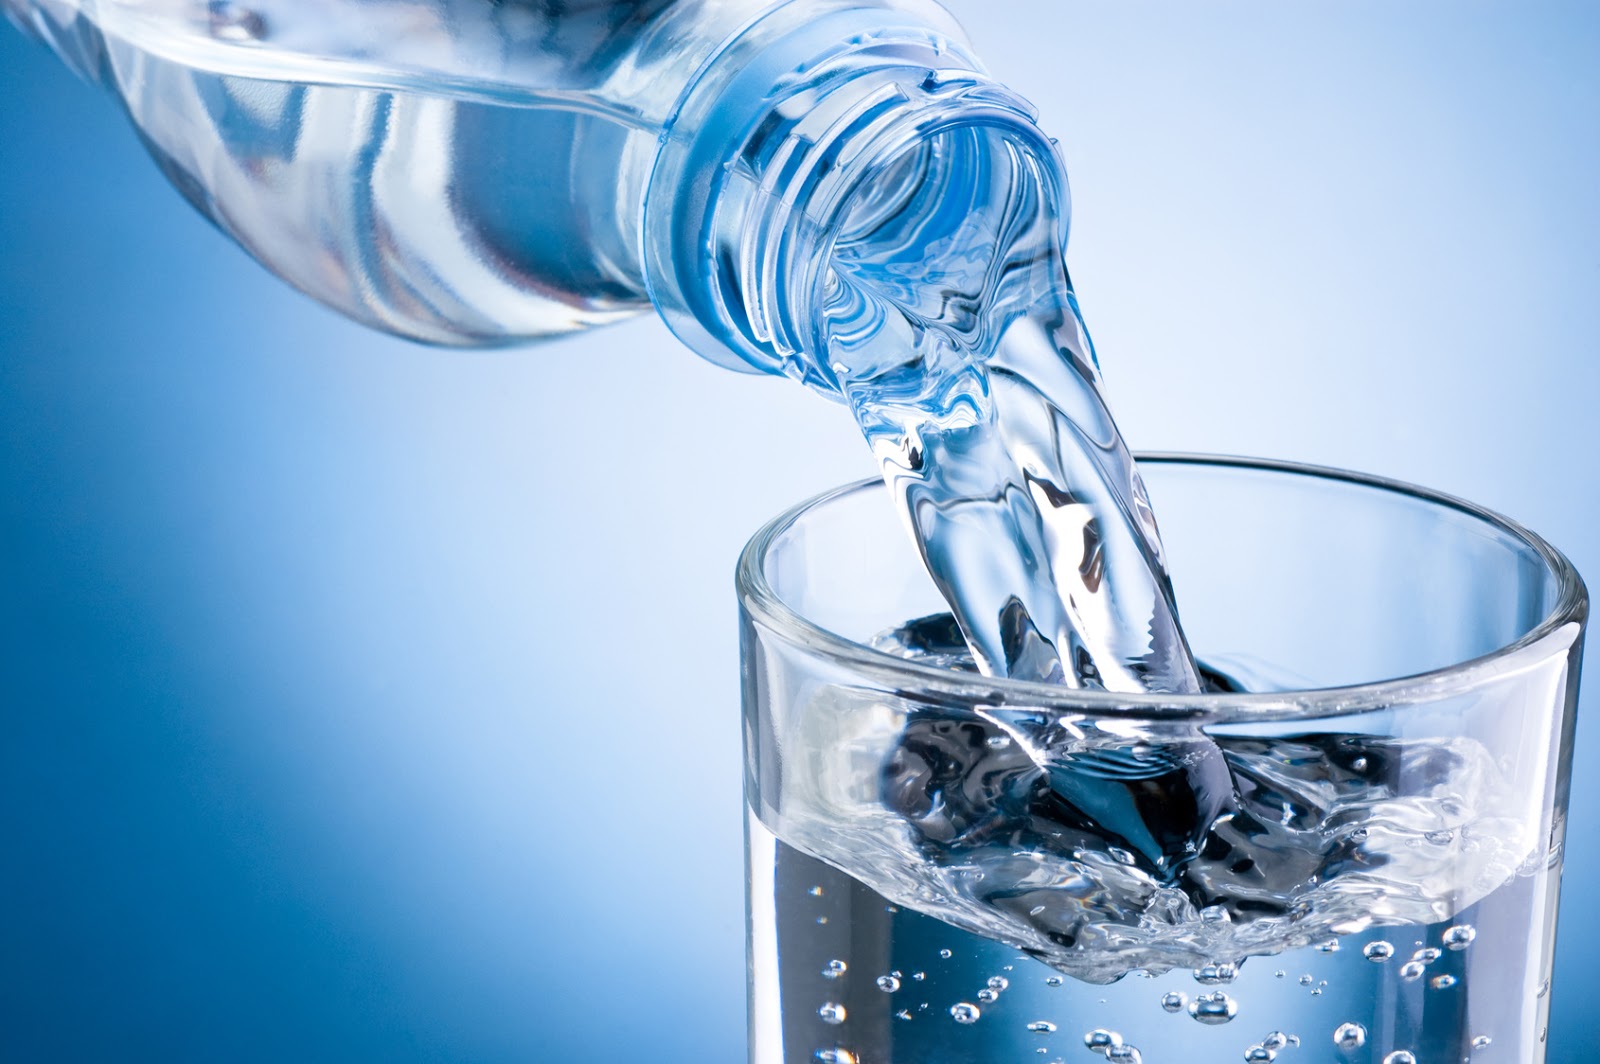 Cuando necesitas refrescarte no hay nada mejor que un buen trago del agua crsitalina.